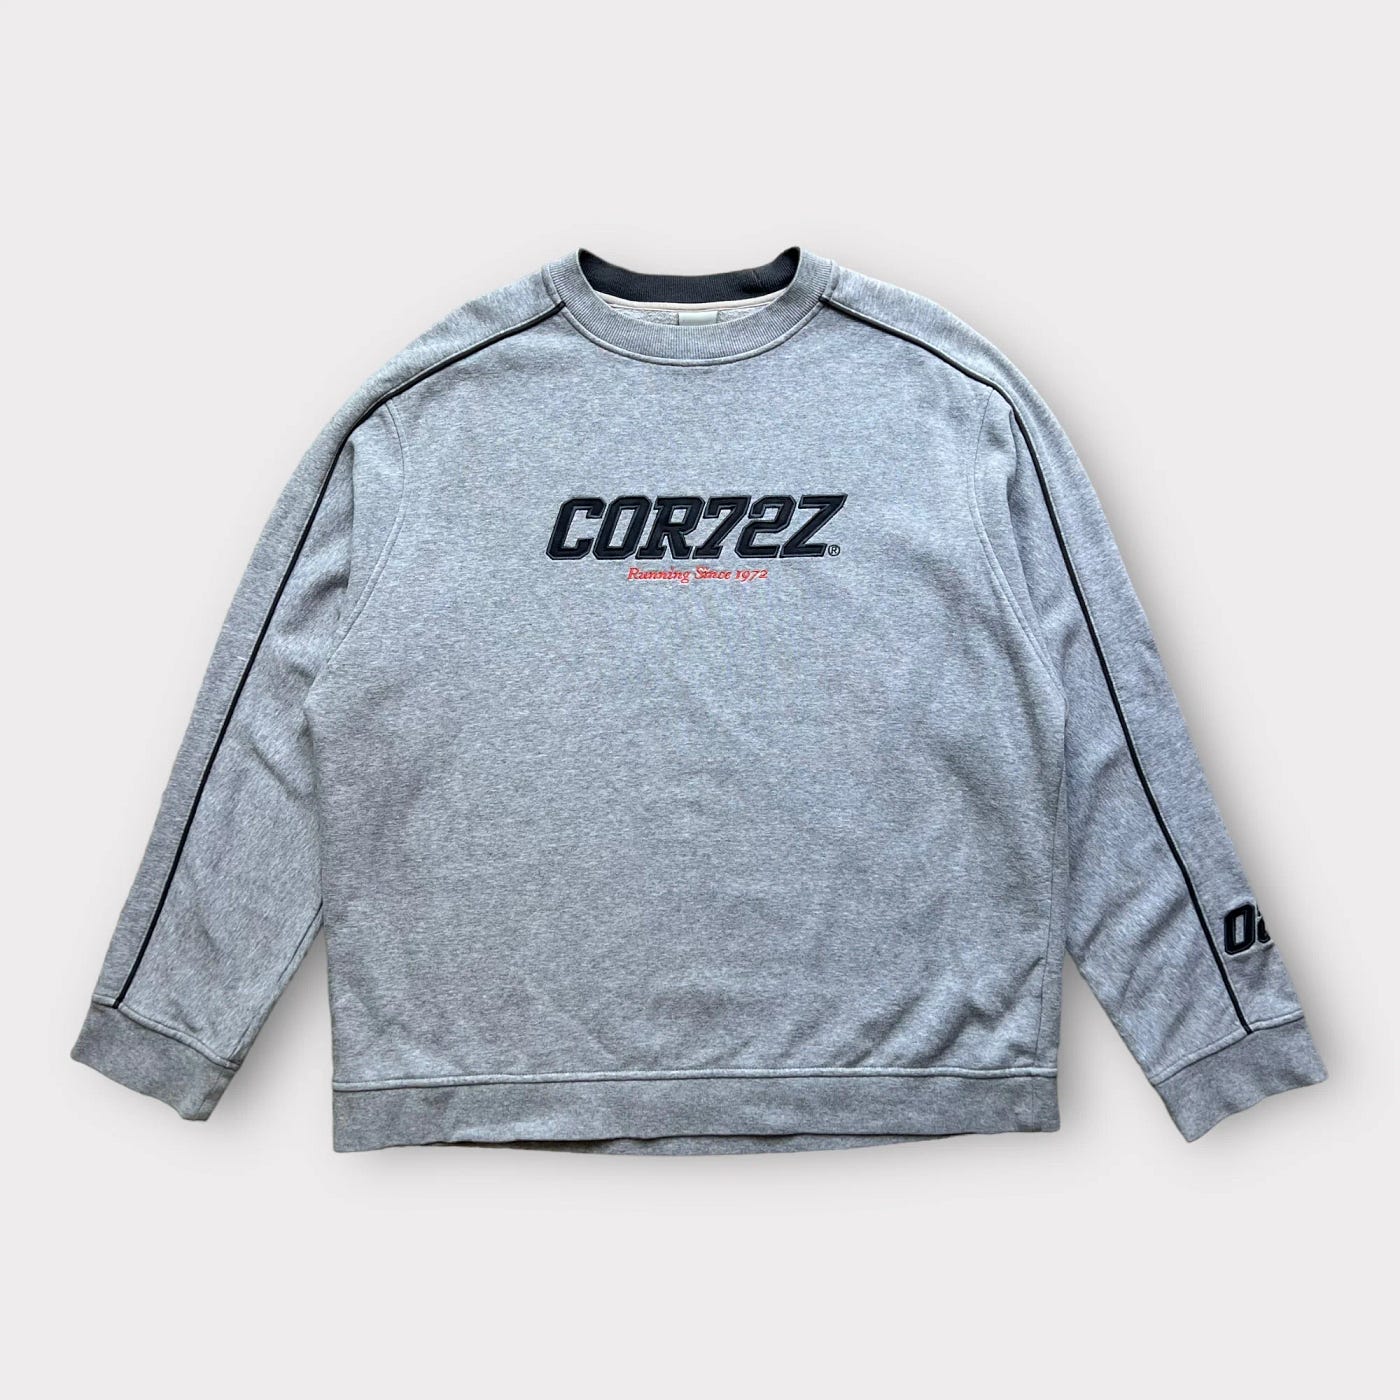 Corteiz Sweatshirt Your New Wardrobe Essential